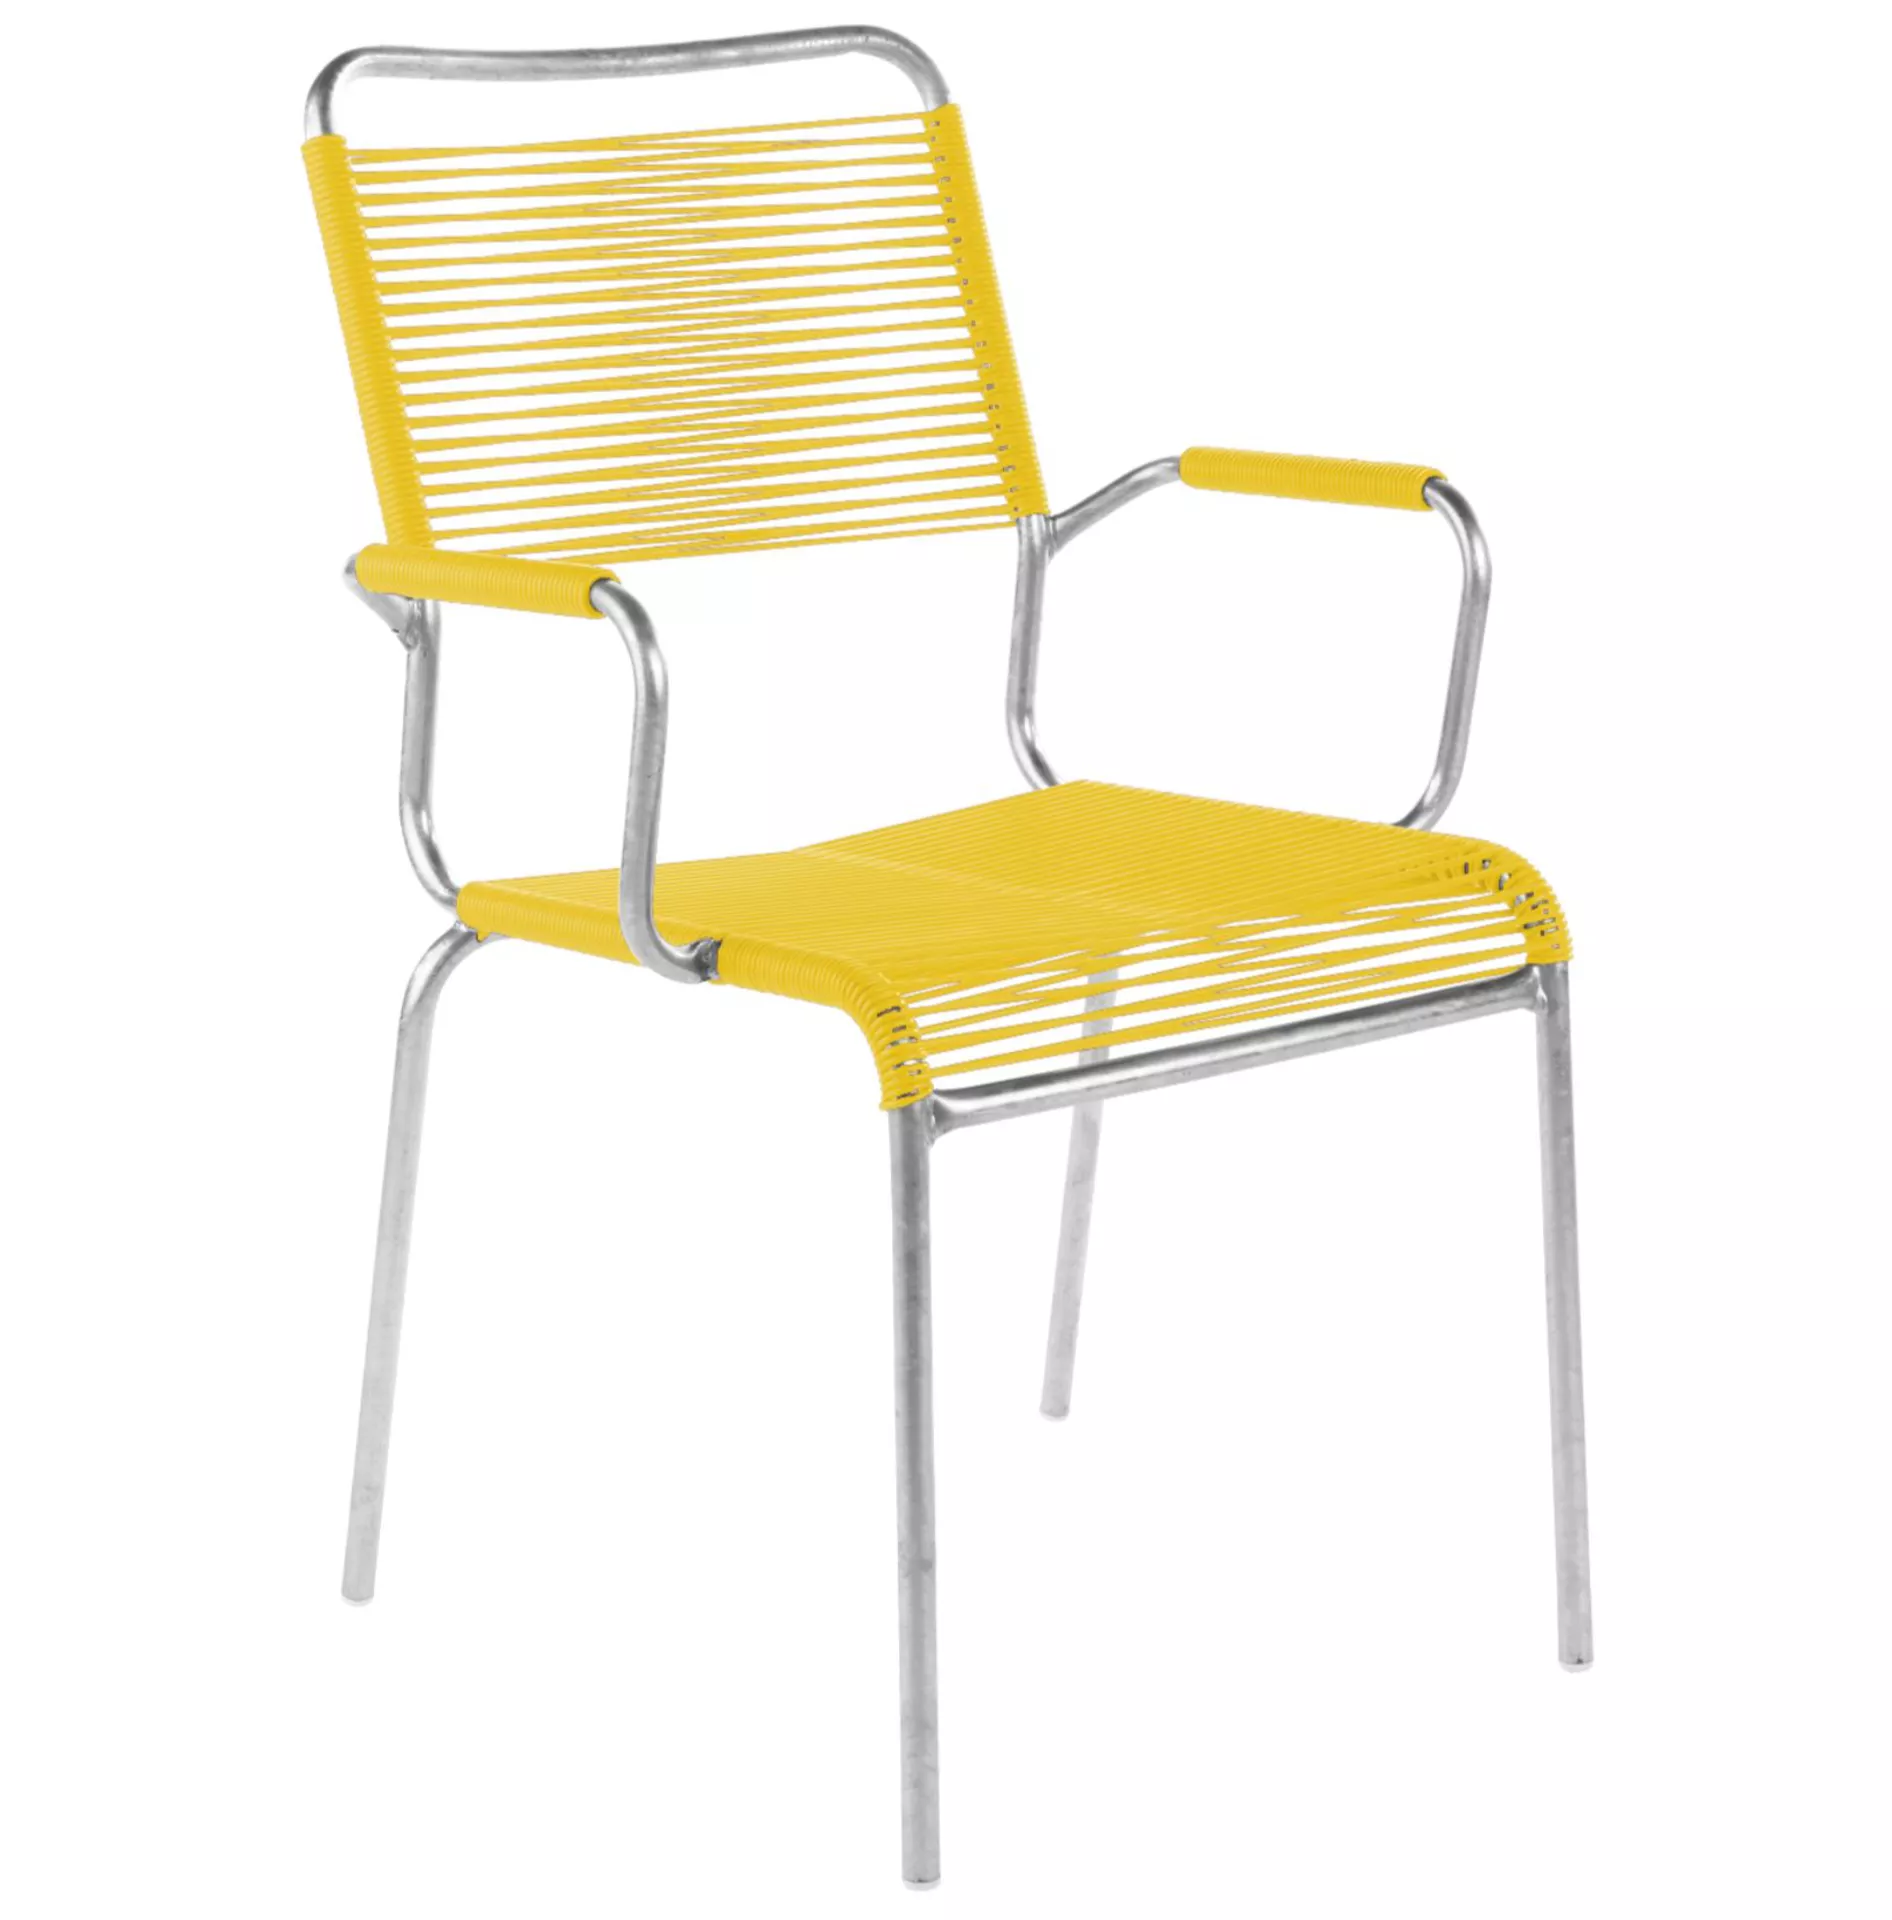 Spaghetti-Stuhl Rigi mit Armlehnen Schaffner / Farbe: Gelb